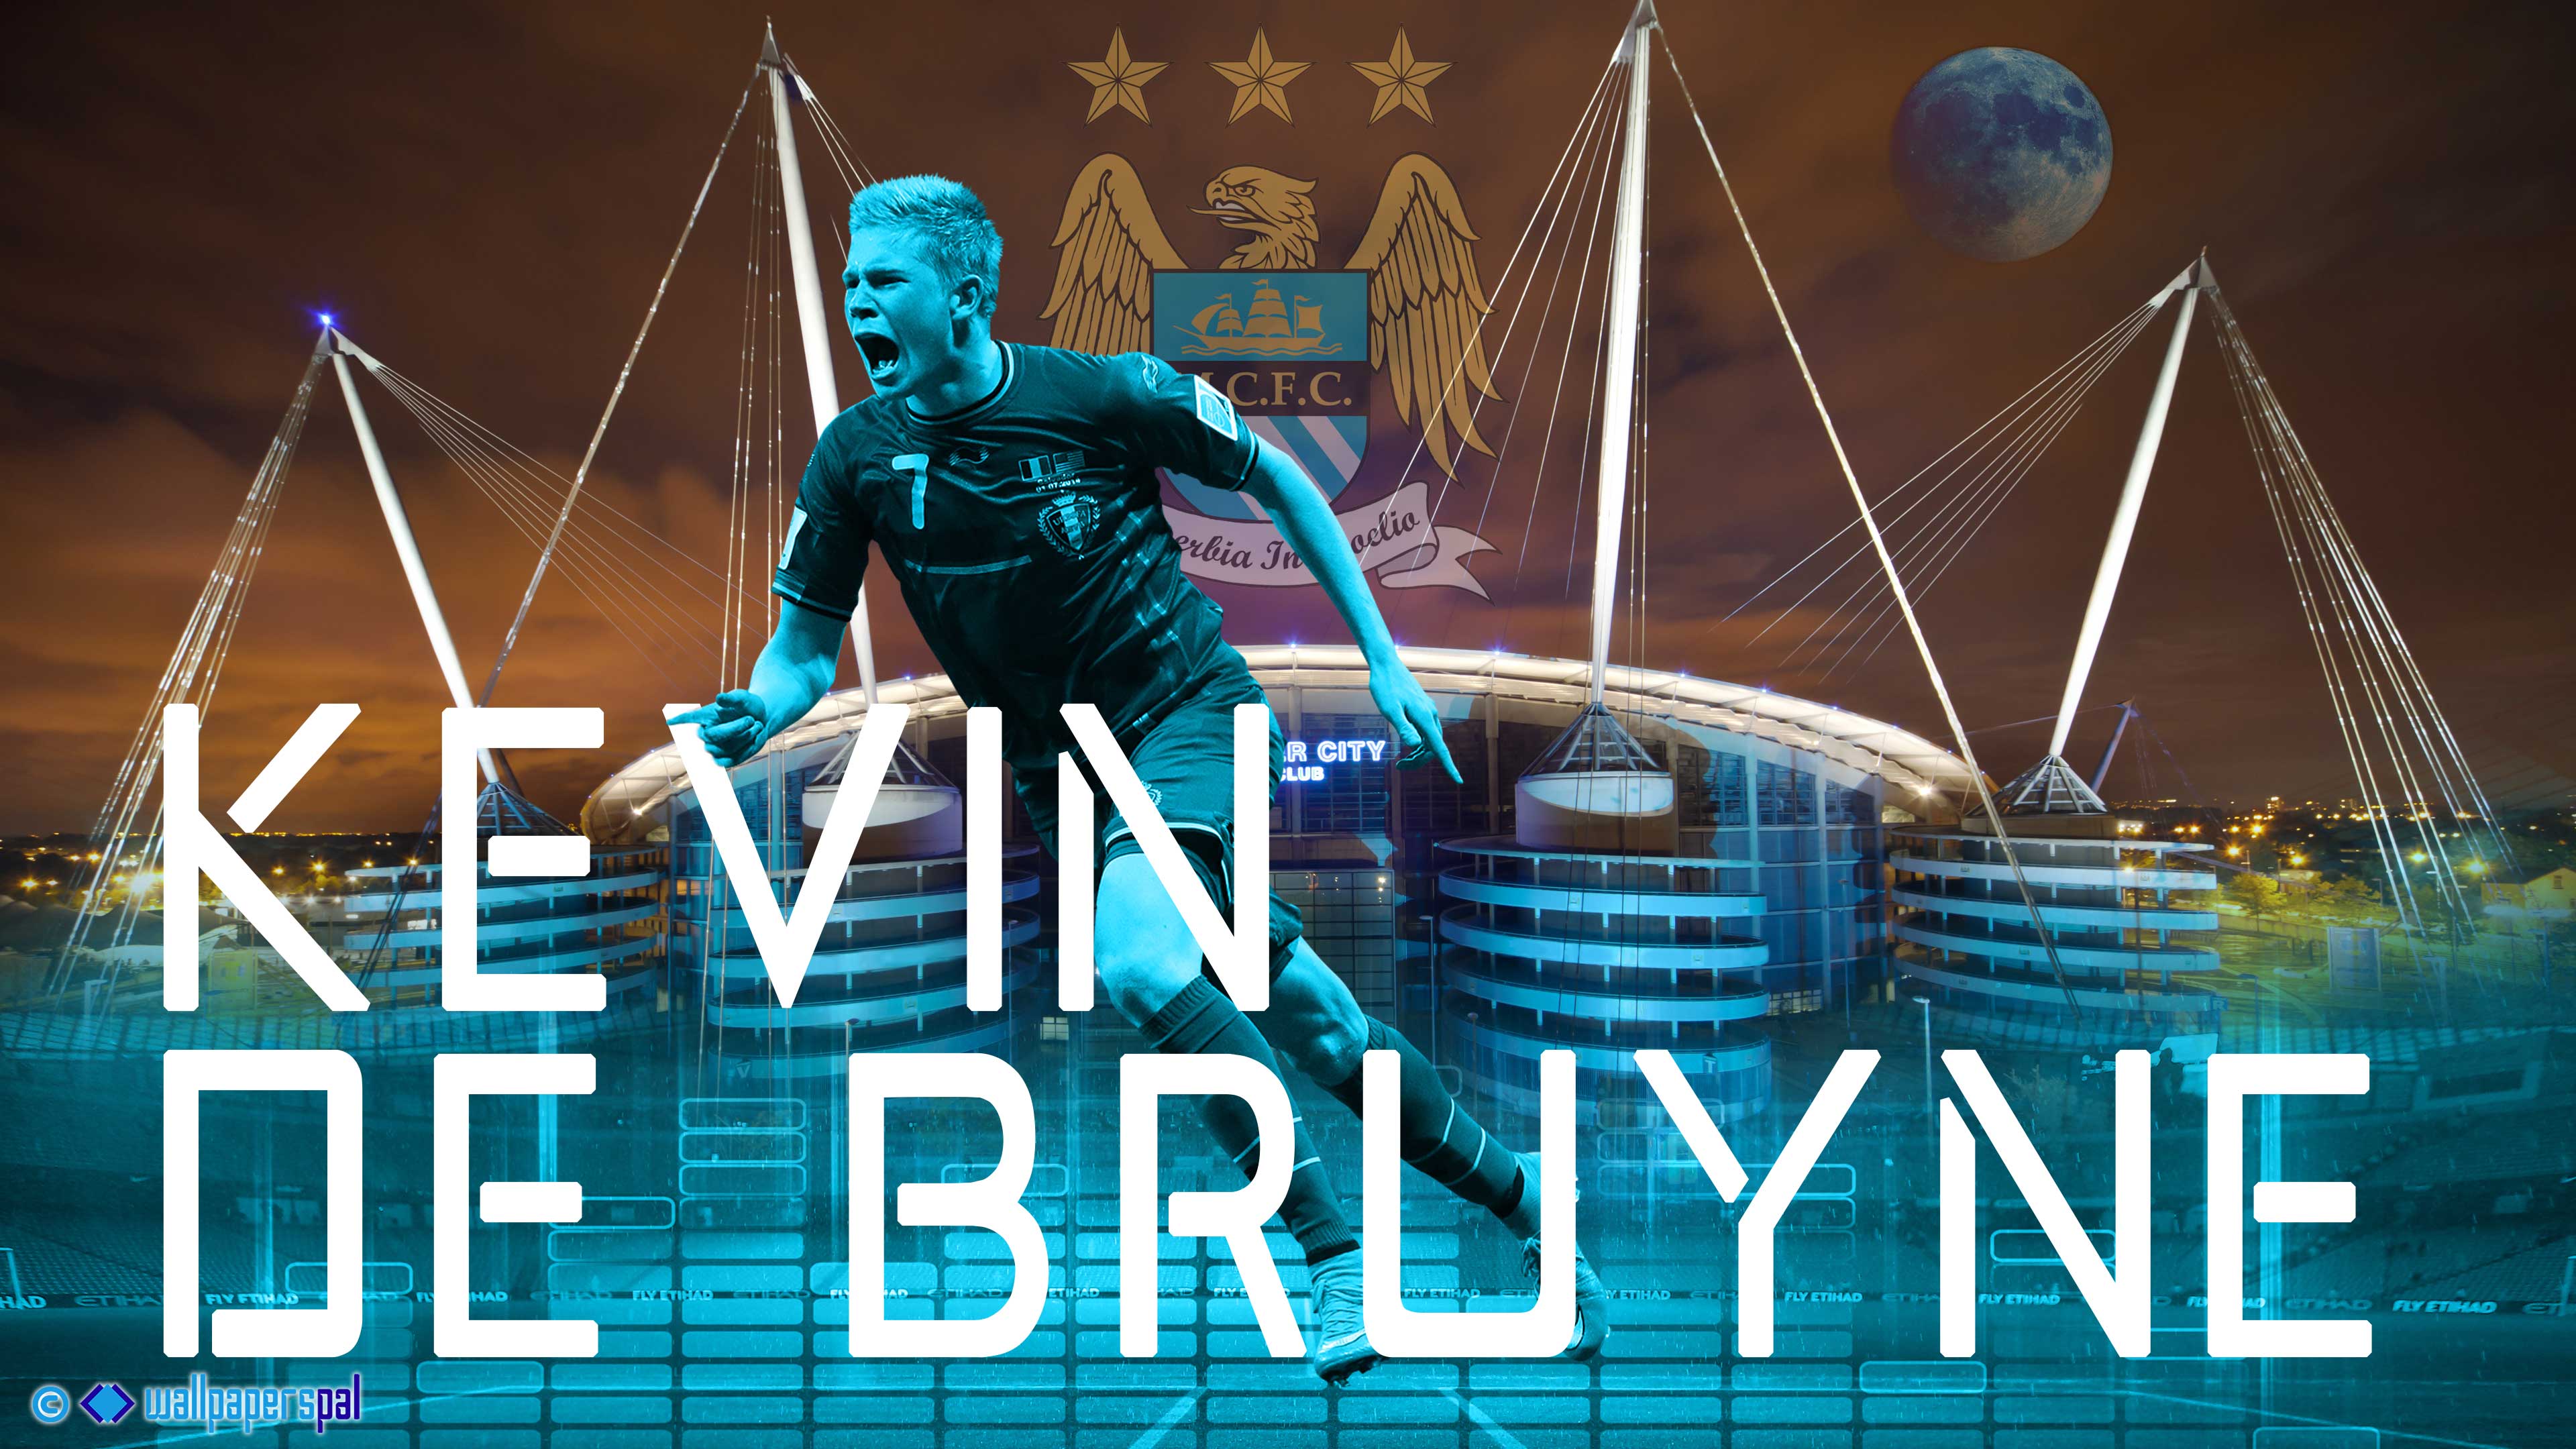 Beberapa Gambar Wallpaper Kevin de Bruyne Di Manchester City 2015